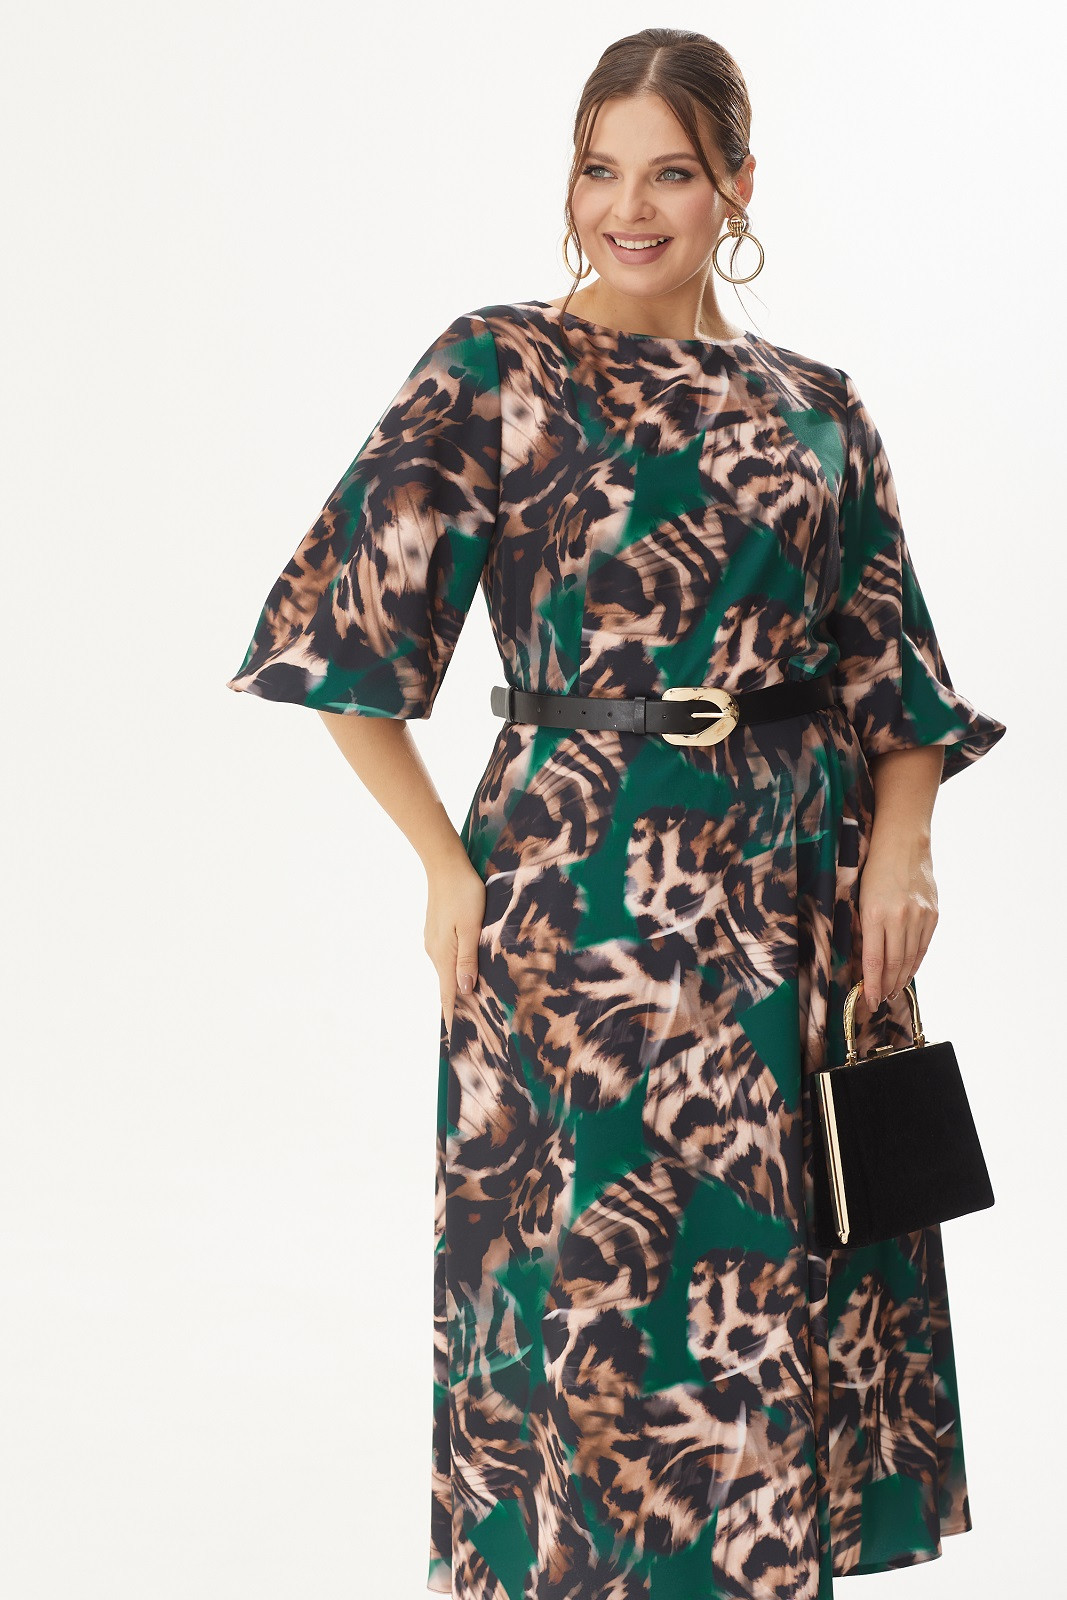 Платье Кокетка и К 1105 зеленый+леопард